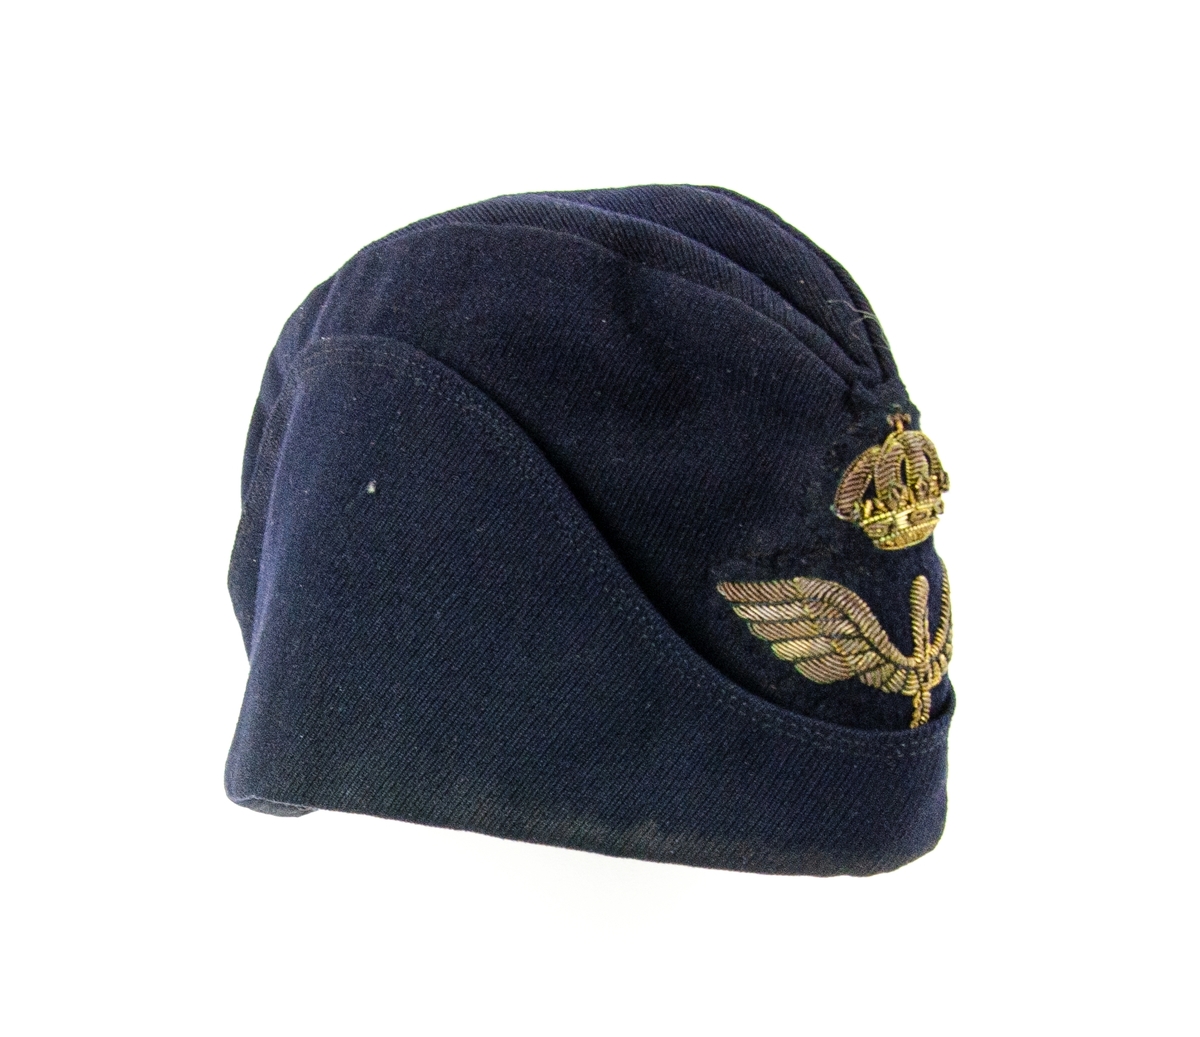 Flygmössa m/1930 Officer. Flygmössa AM 68/59 Flygvapnet. Storlek 58